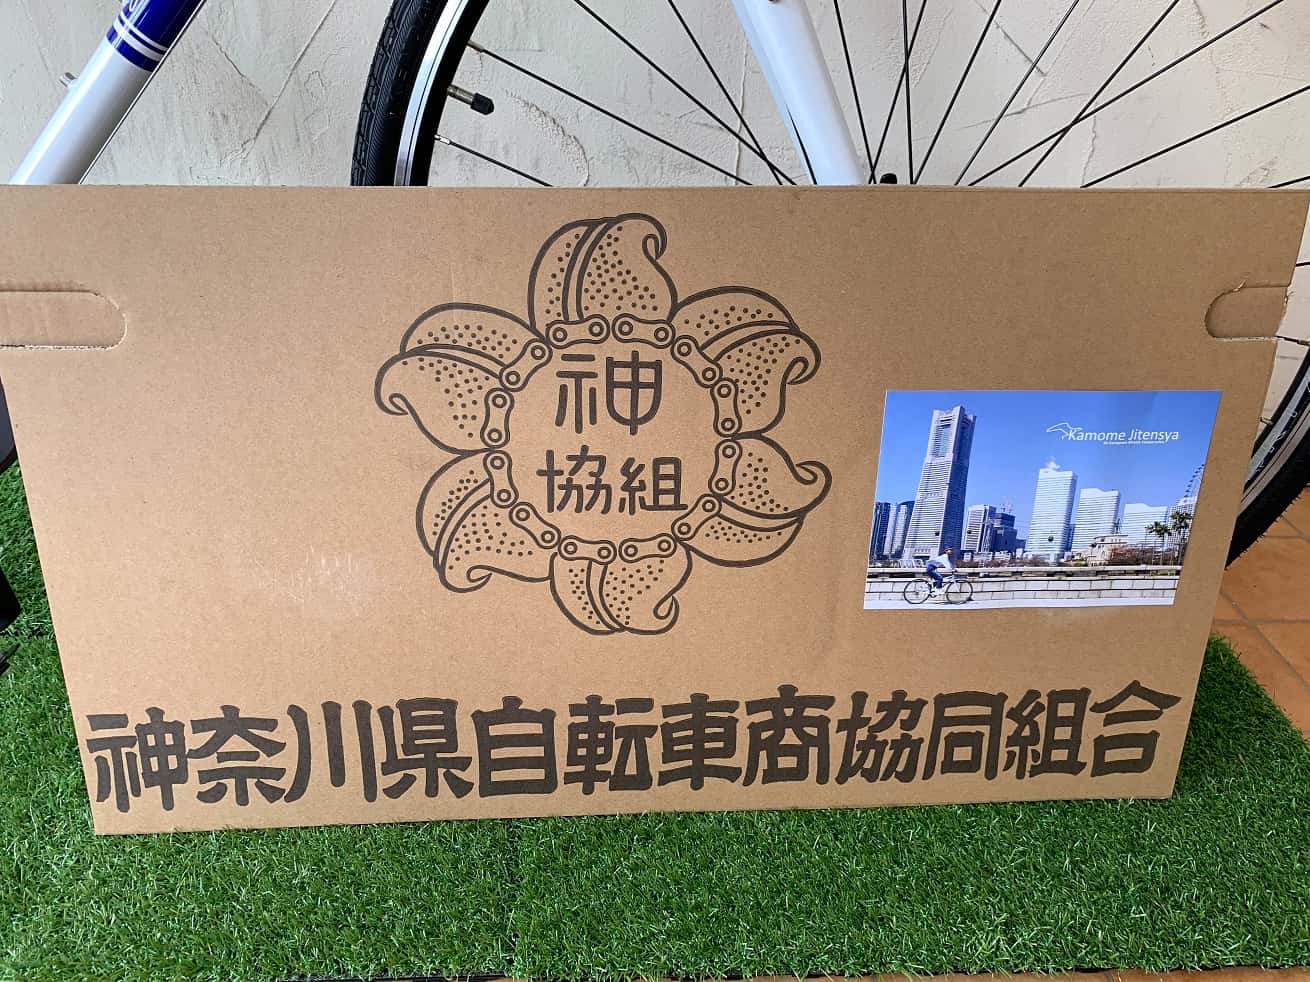 神奈川県自転車組合「かもめ自転車」のPOP